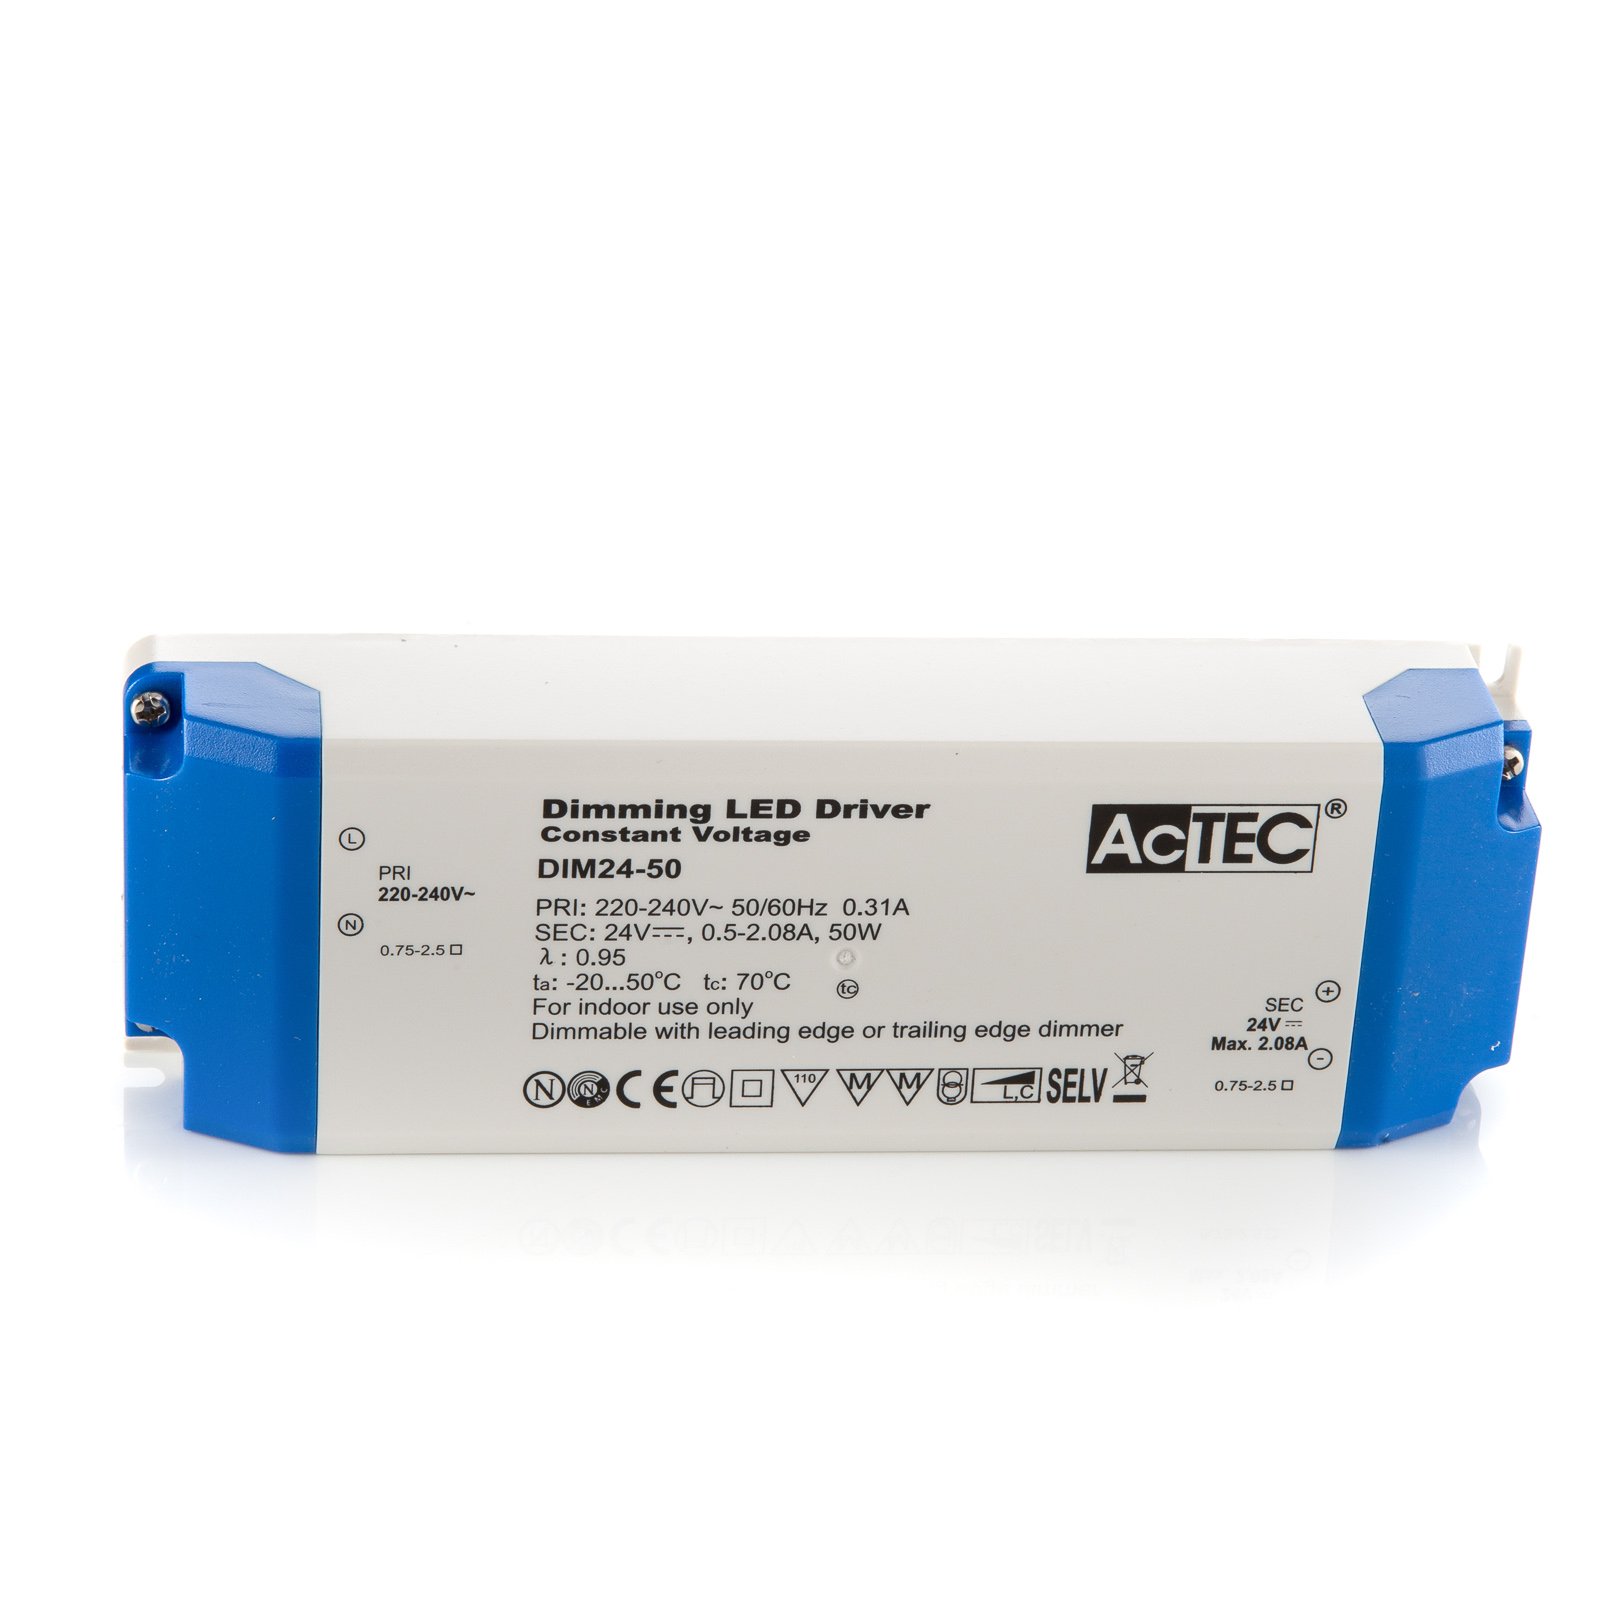 AcTEC DIM transformador LED CV 24V 50W atenuable